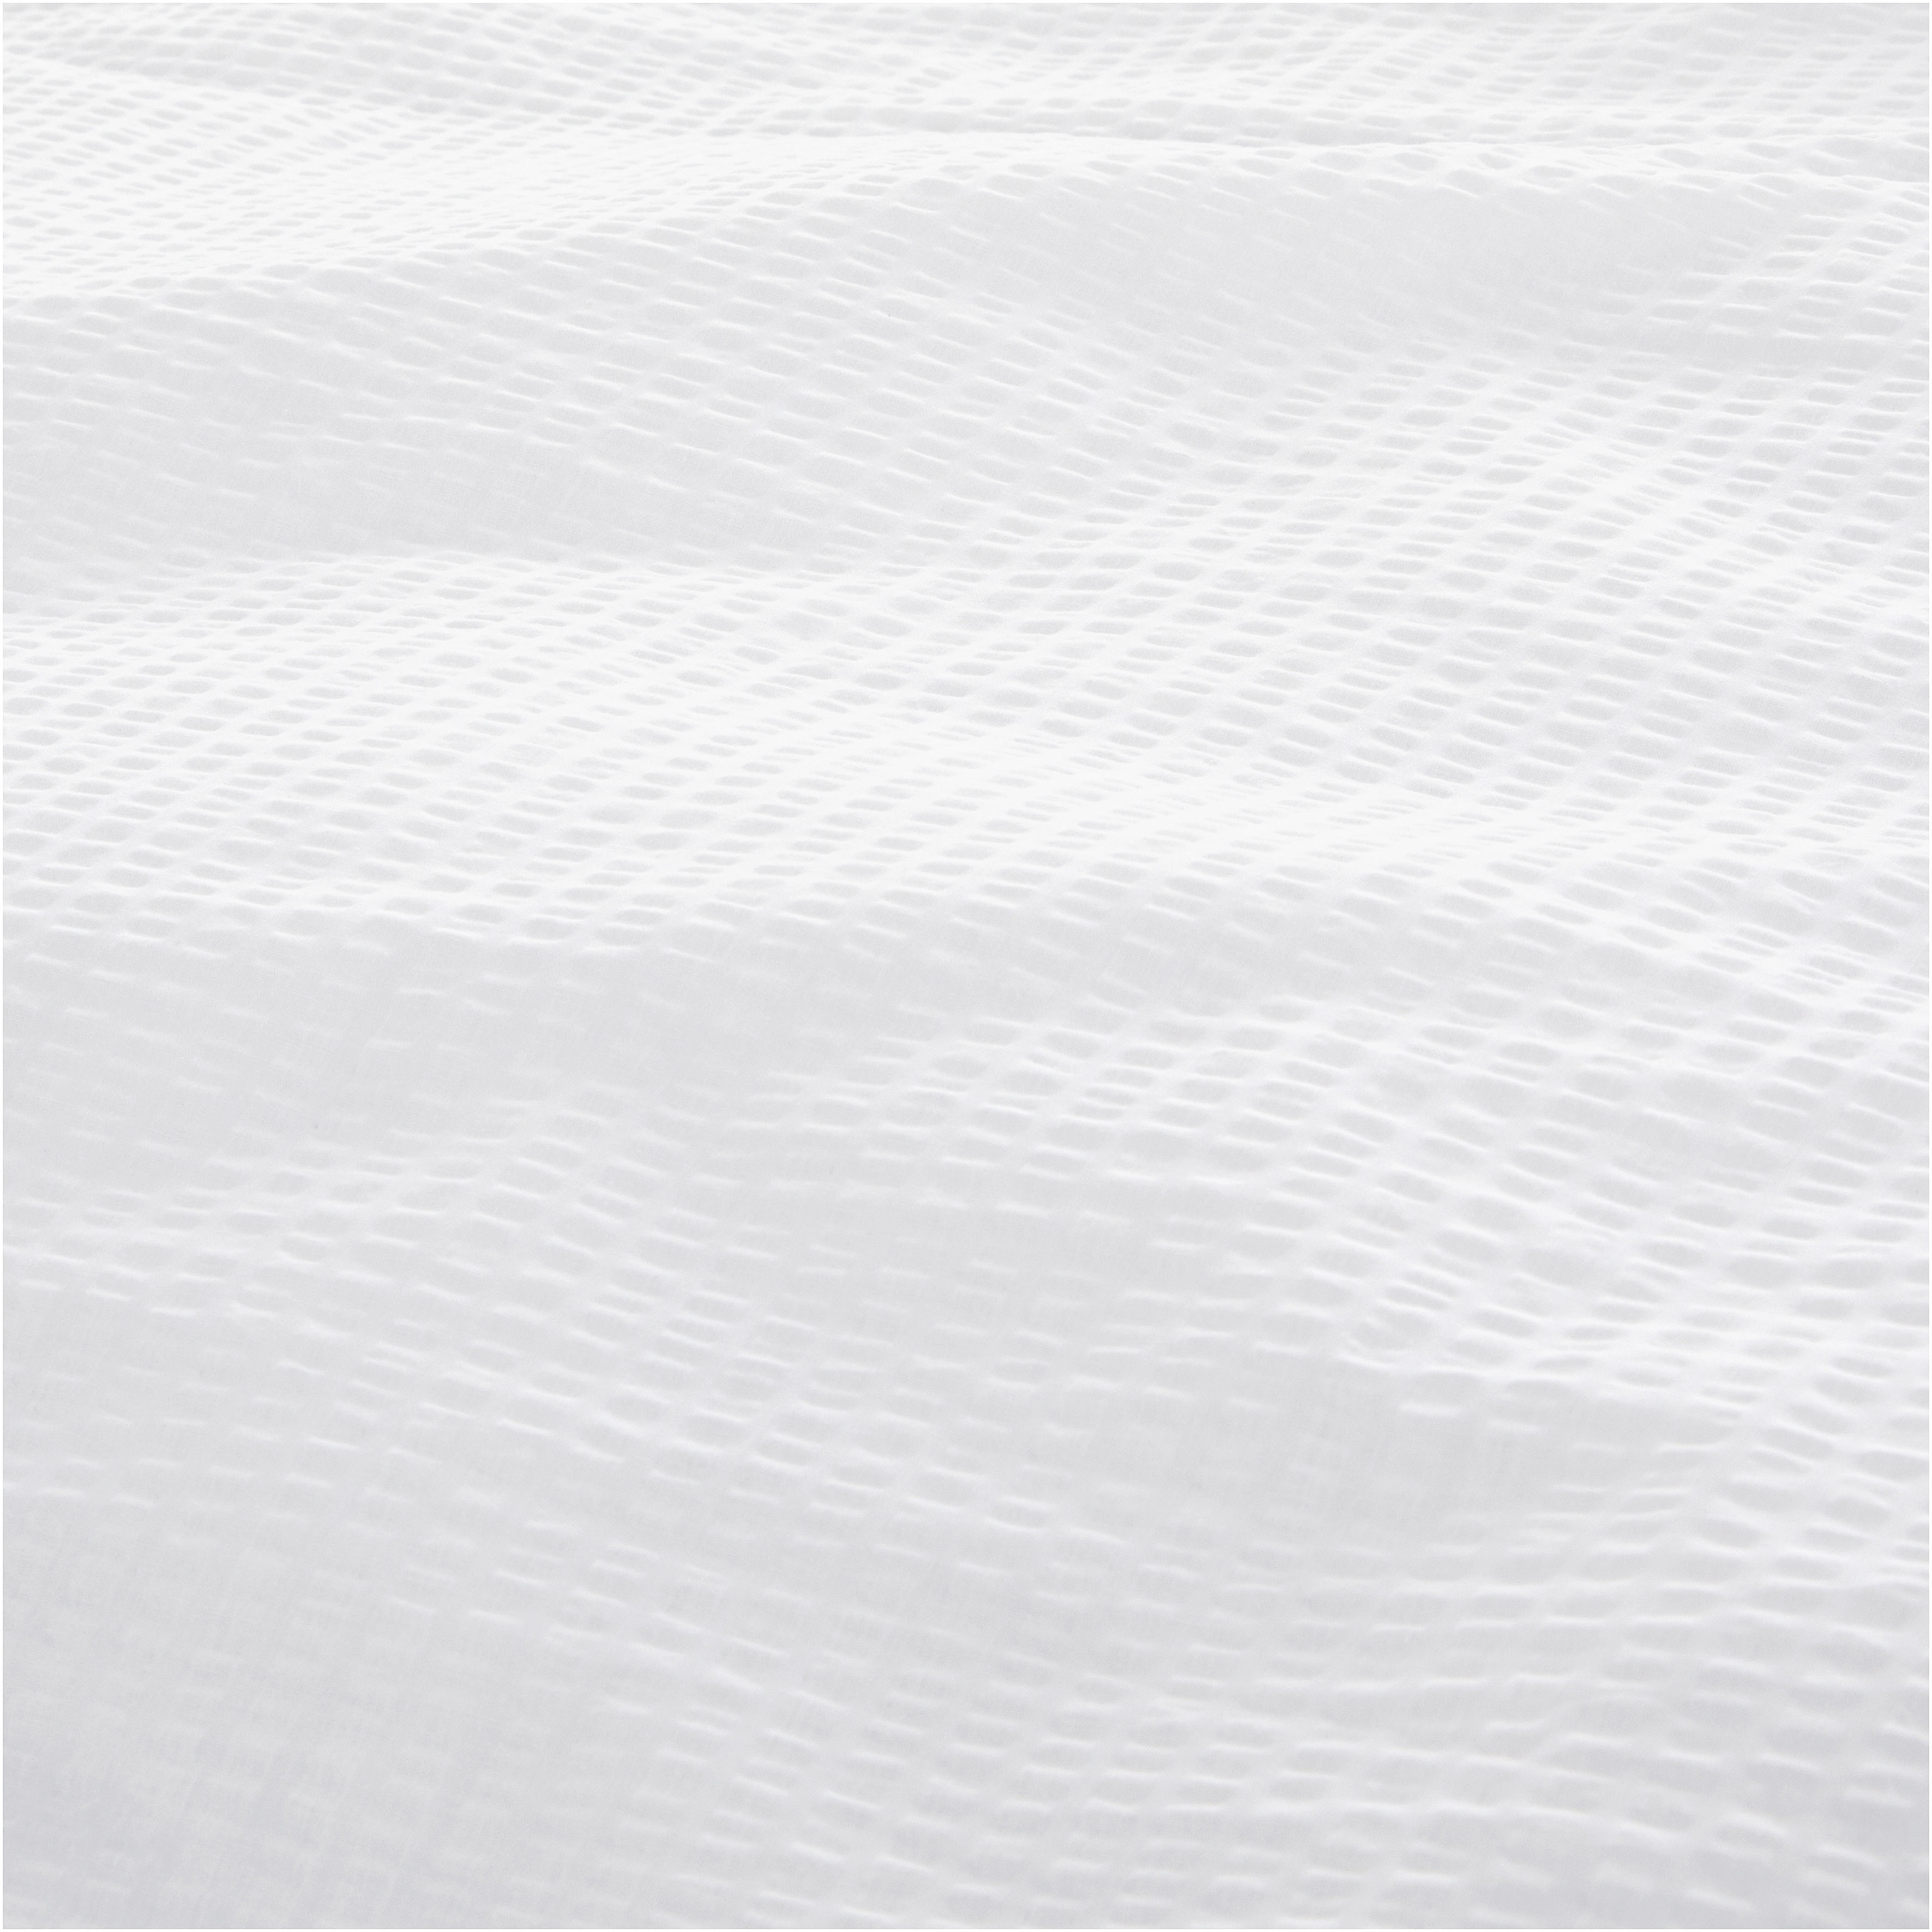 andas Duvet Cover in White